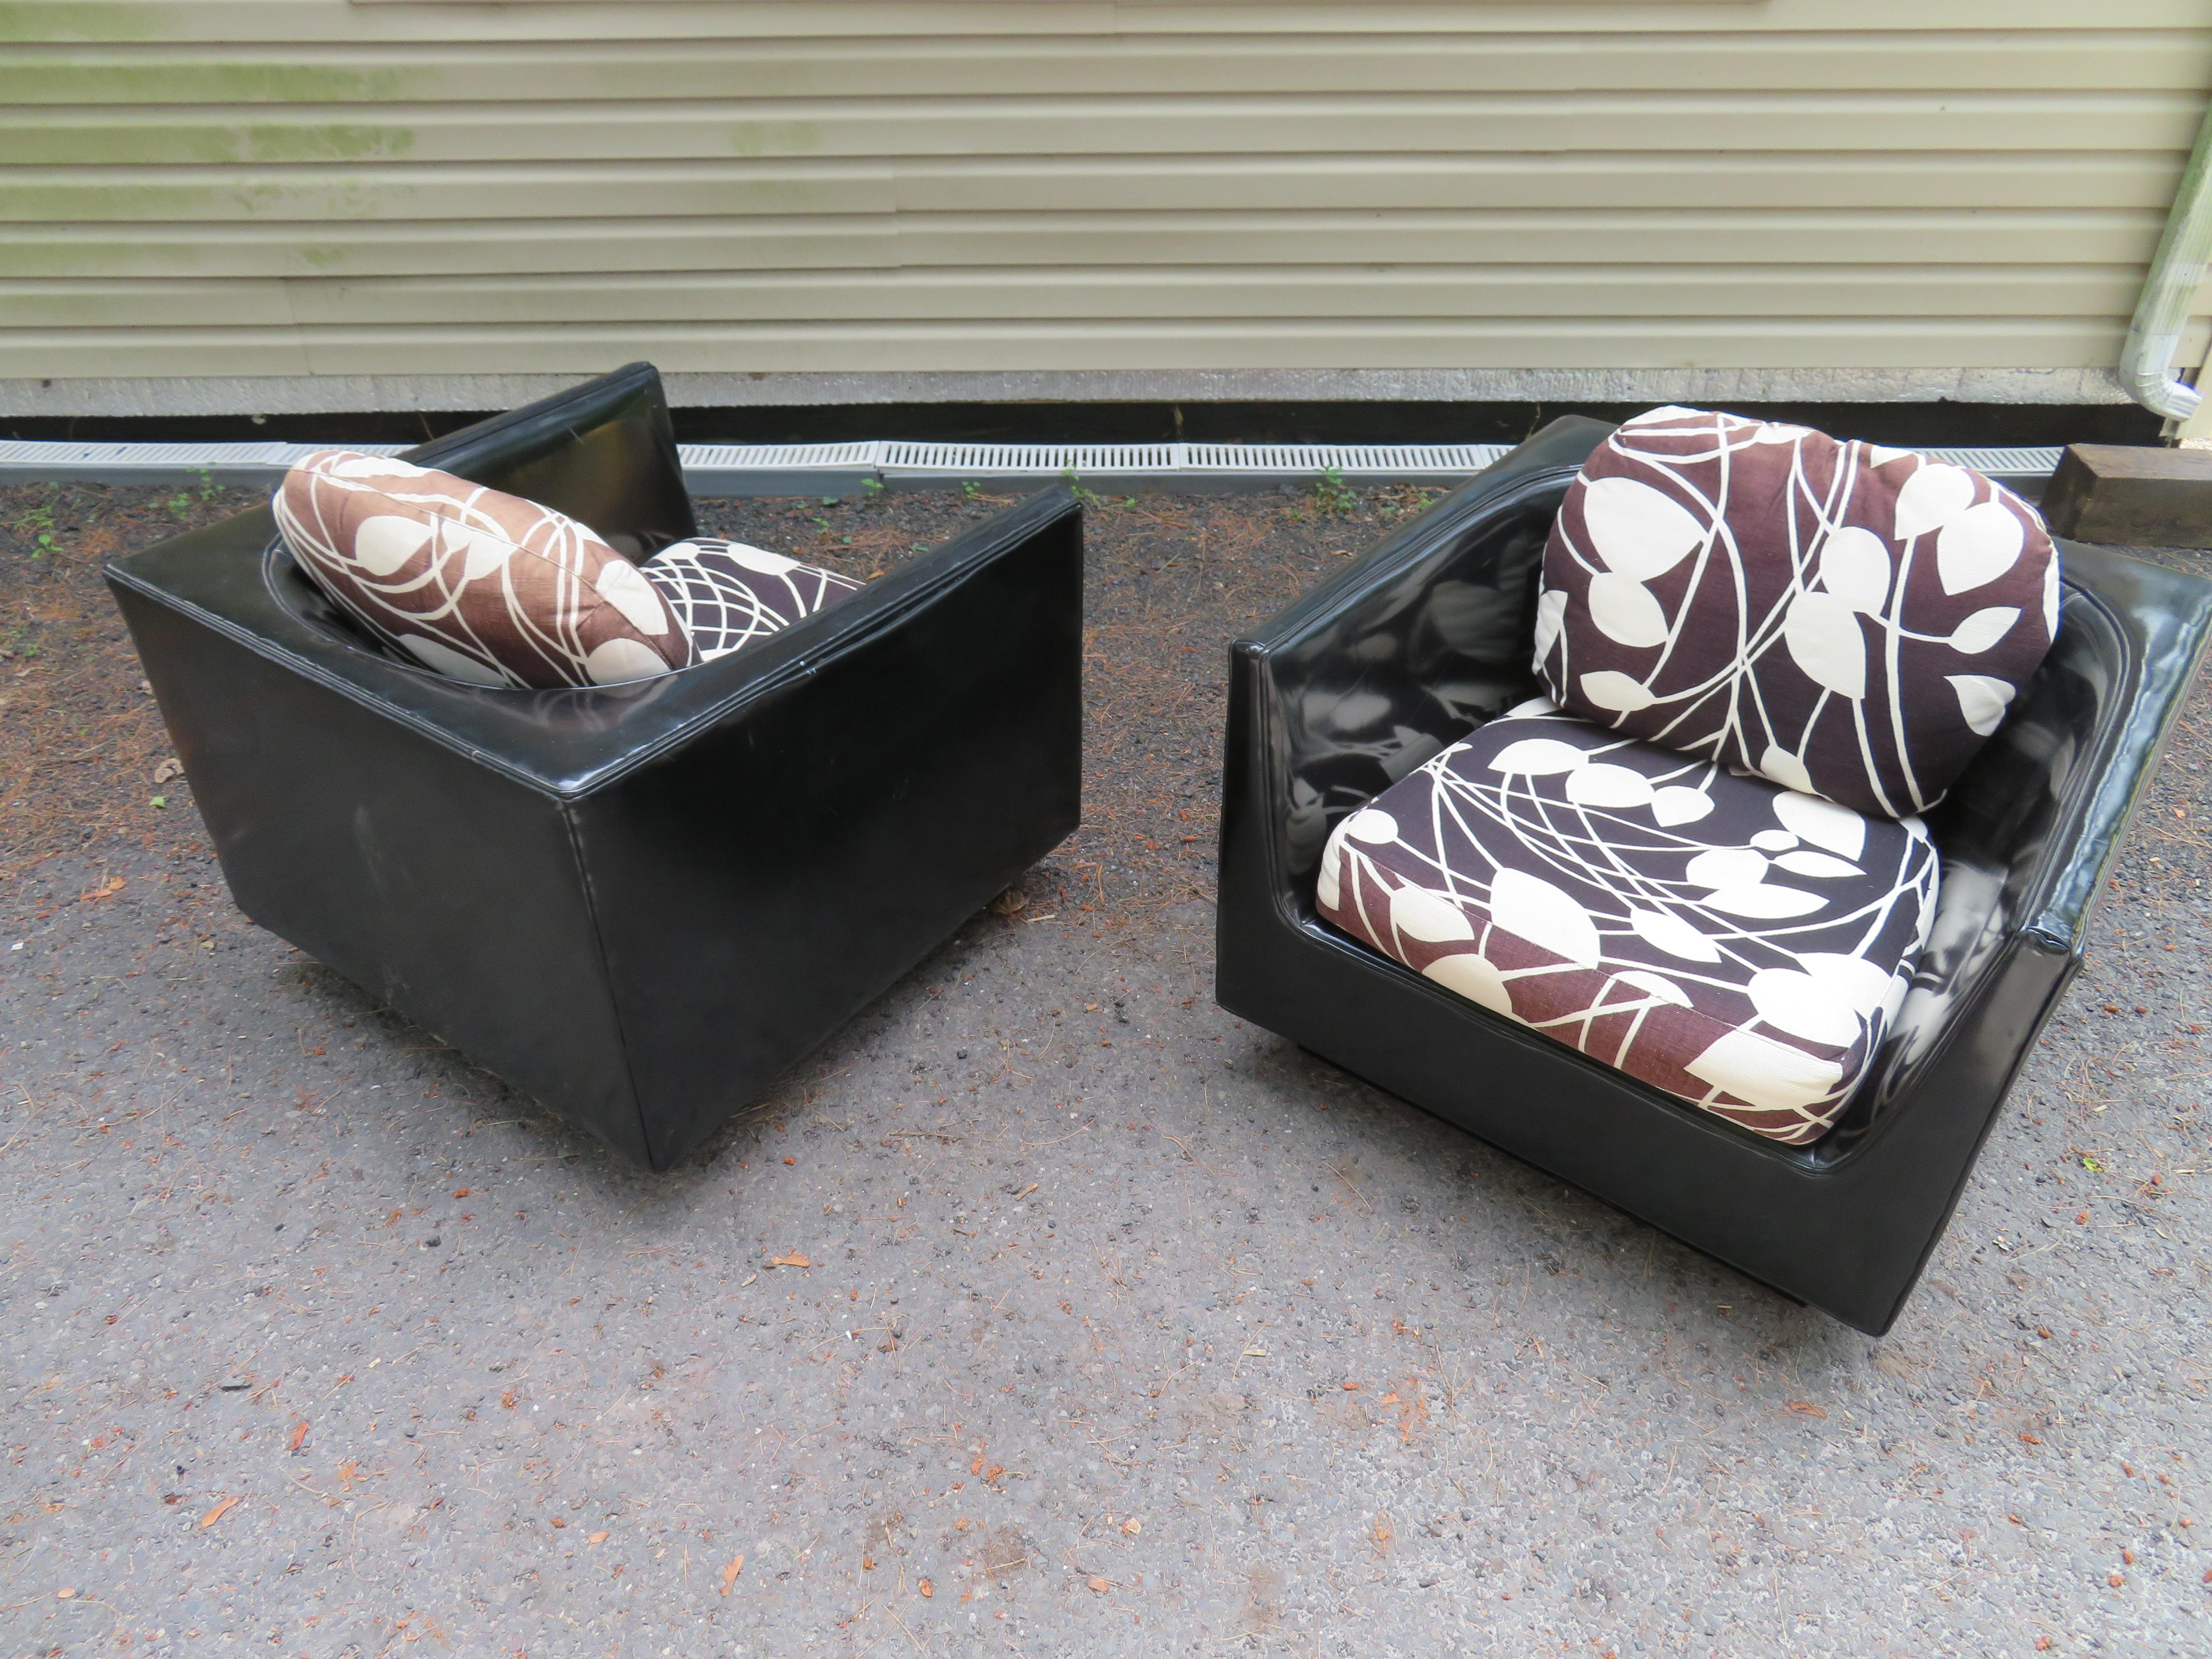 Hübsches Paar signierter Selig-Würfel-Lounge-Stühle im Stil von John Van Koert. Wir lieben die einzigartigen geschwungenen U-förmigen Rückenlehnen zusammen mit den originellen schwarz-weißen Leinensitzkissen. Die ursprüngliche Polsterung zeigt